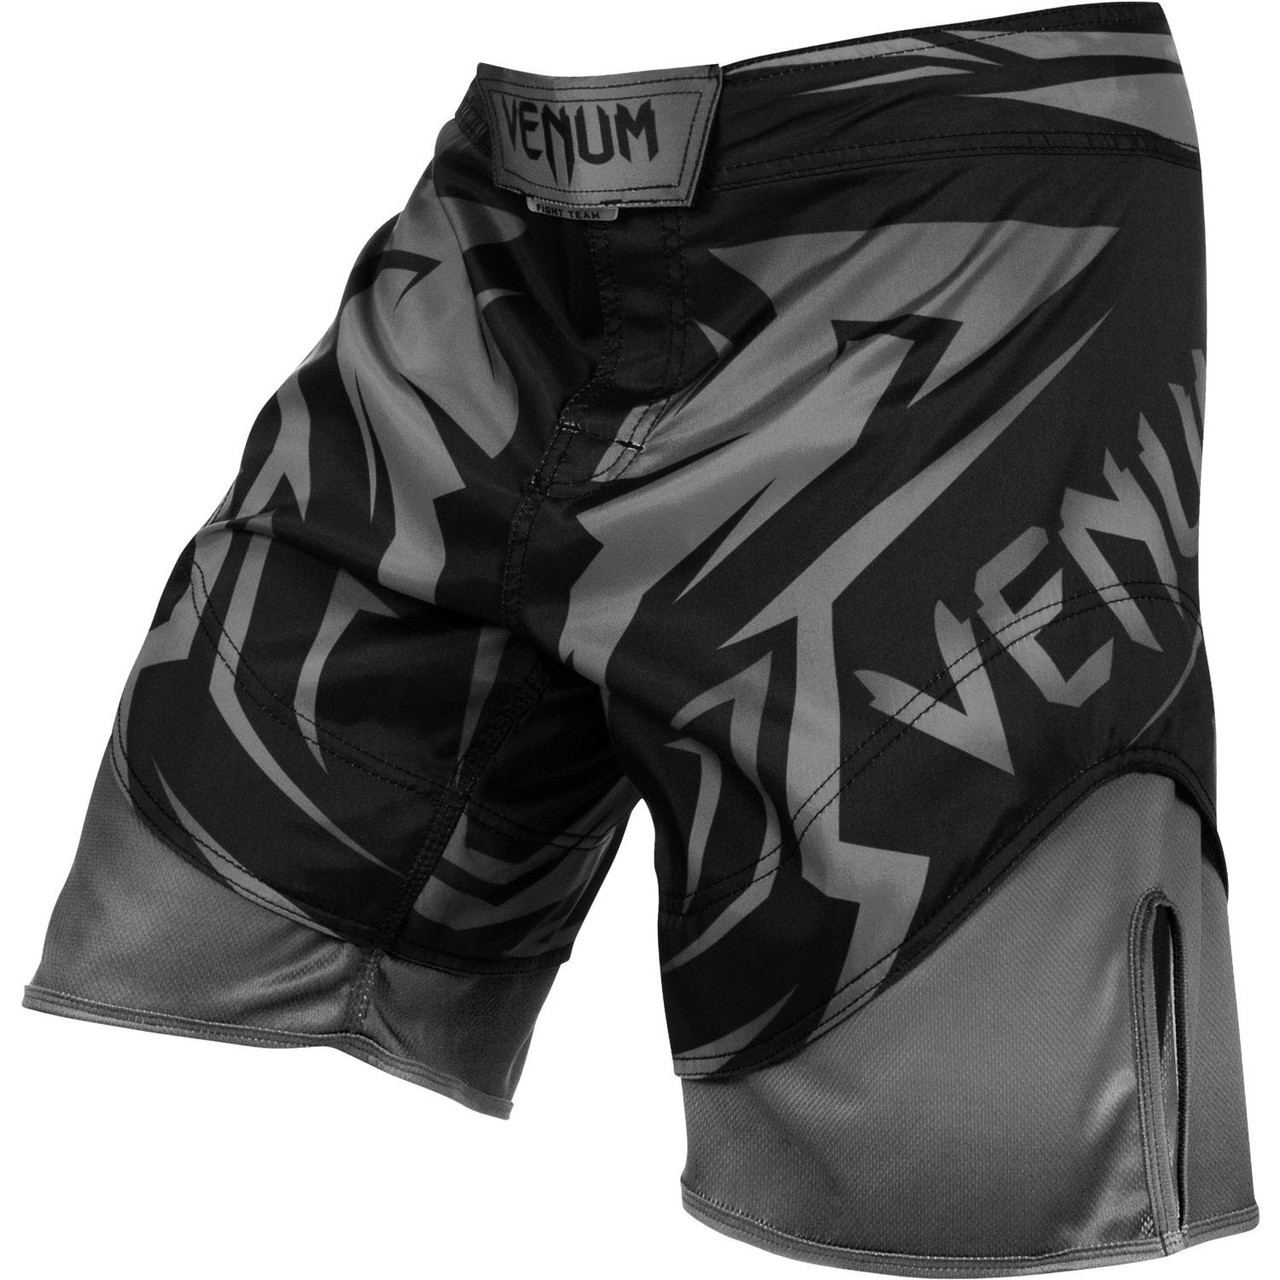 VENUM Venum BANDIT - Short Homme black/grey - Private Sport Shop